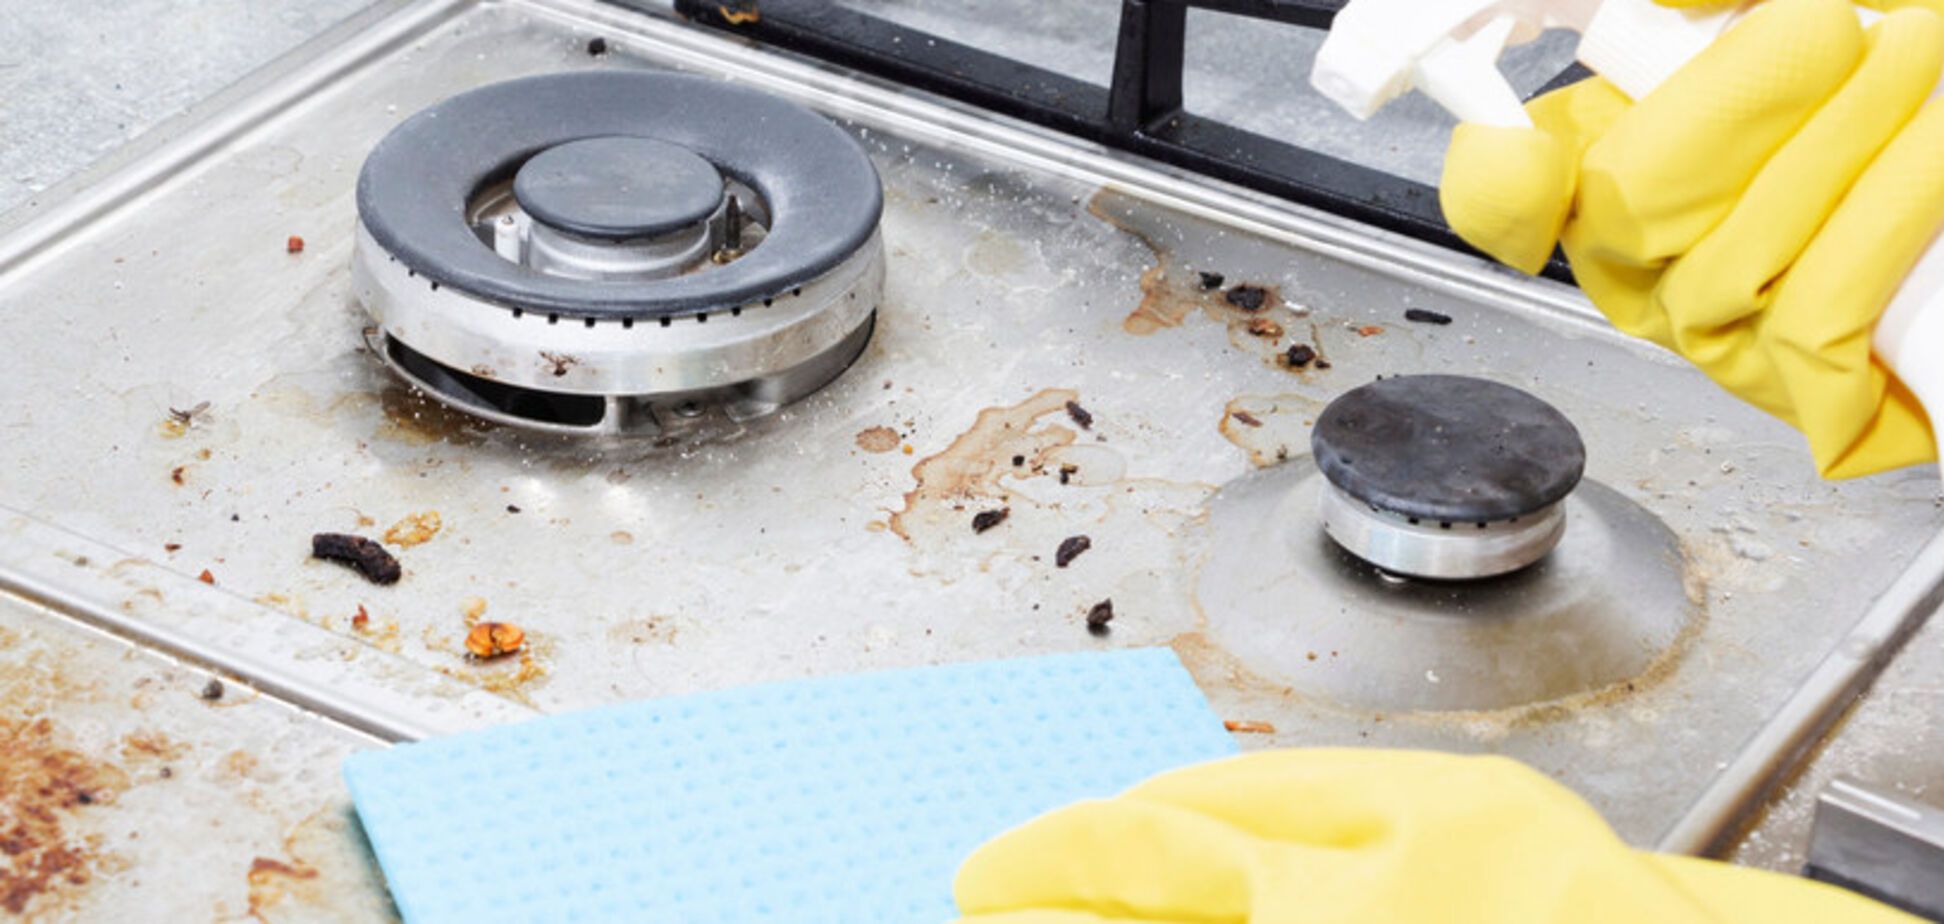 Чем очистить конфорки газовой плиты от жира: два способа для идеальной чистоты